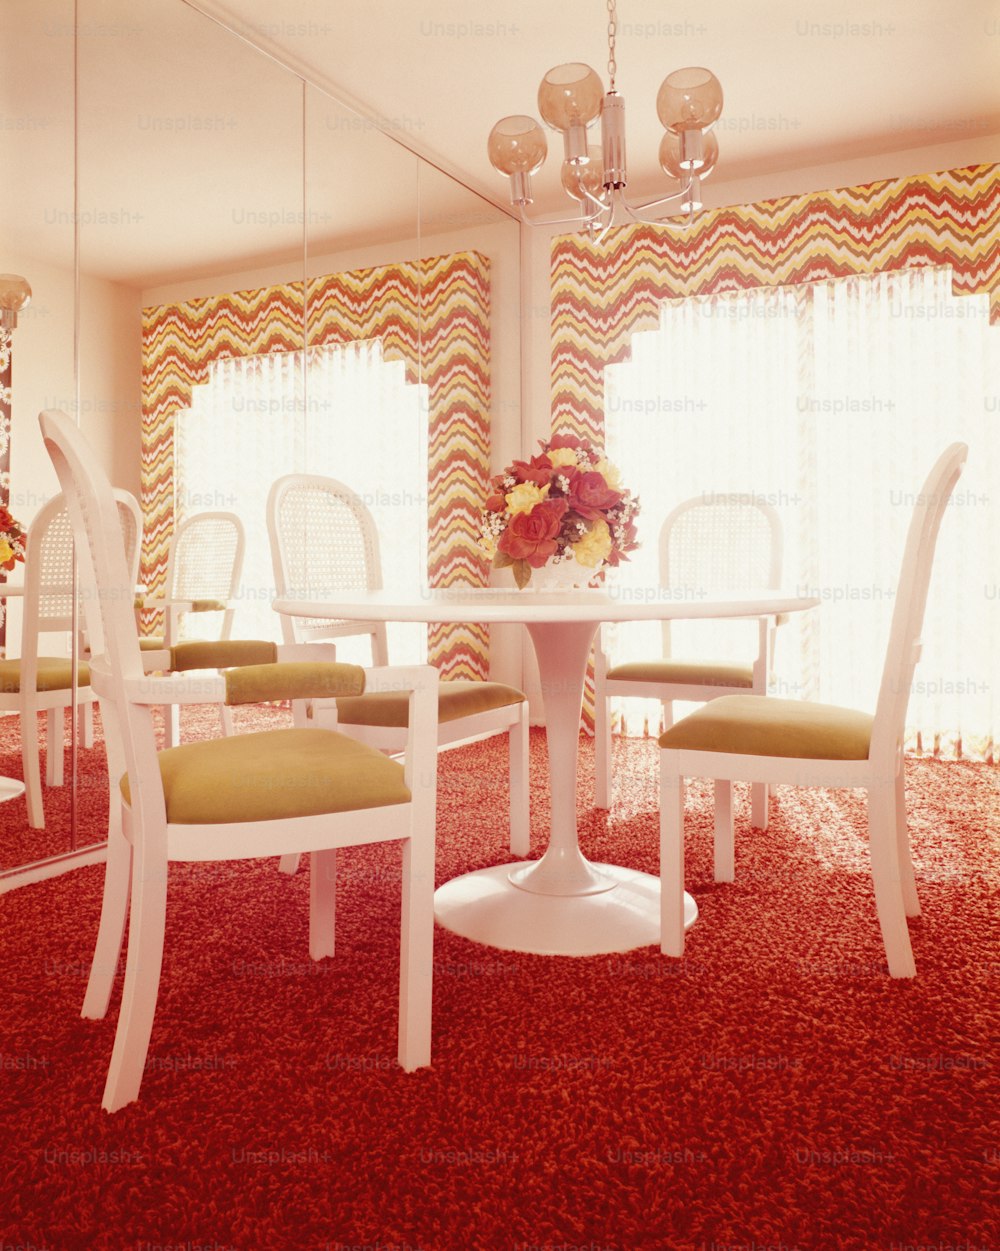 アメリカ合衆国 - 1970年代頃:白いテーブルと4つの成形プラスチック製の台座の椅子を備えたダイニングルームのインテリア。